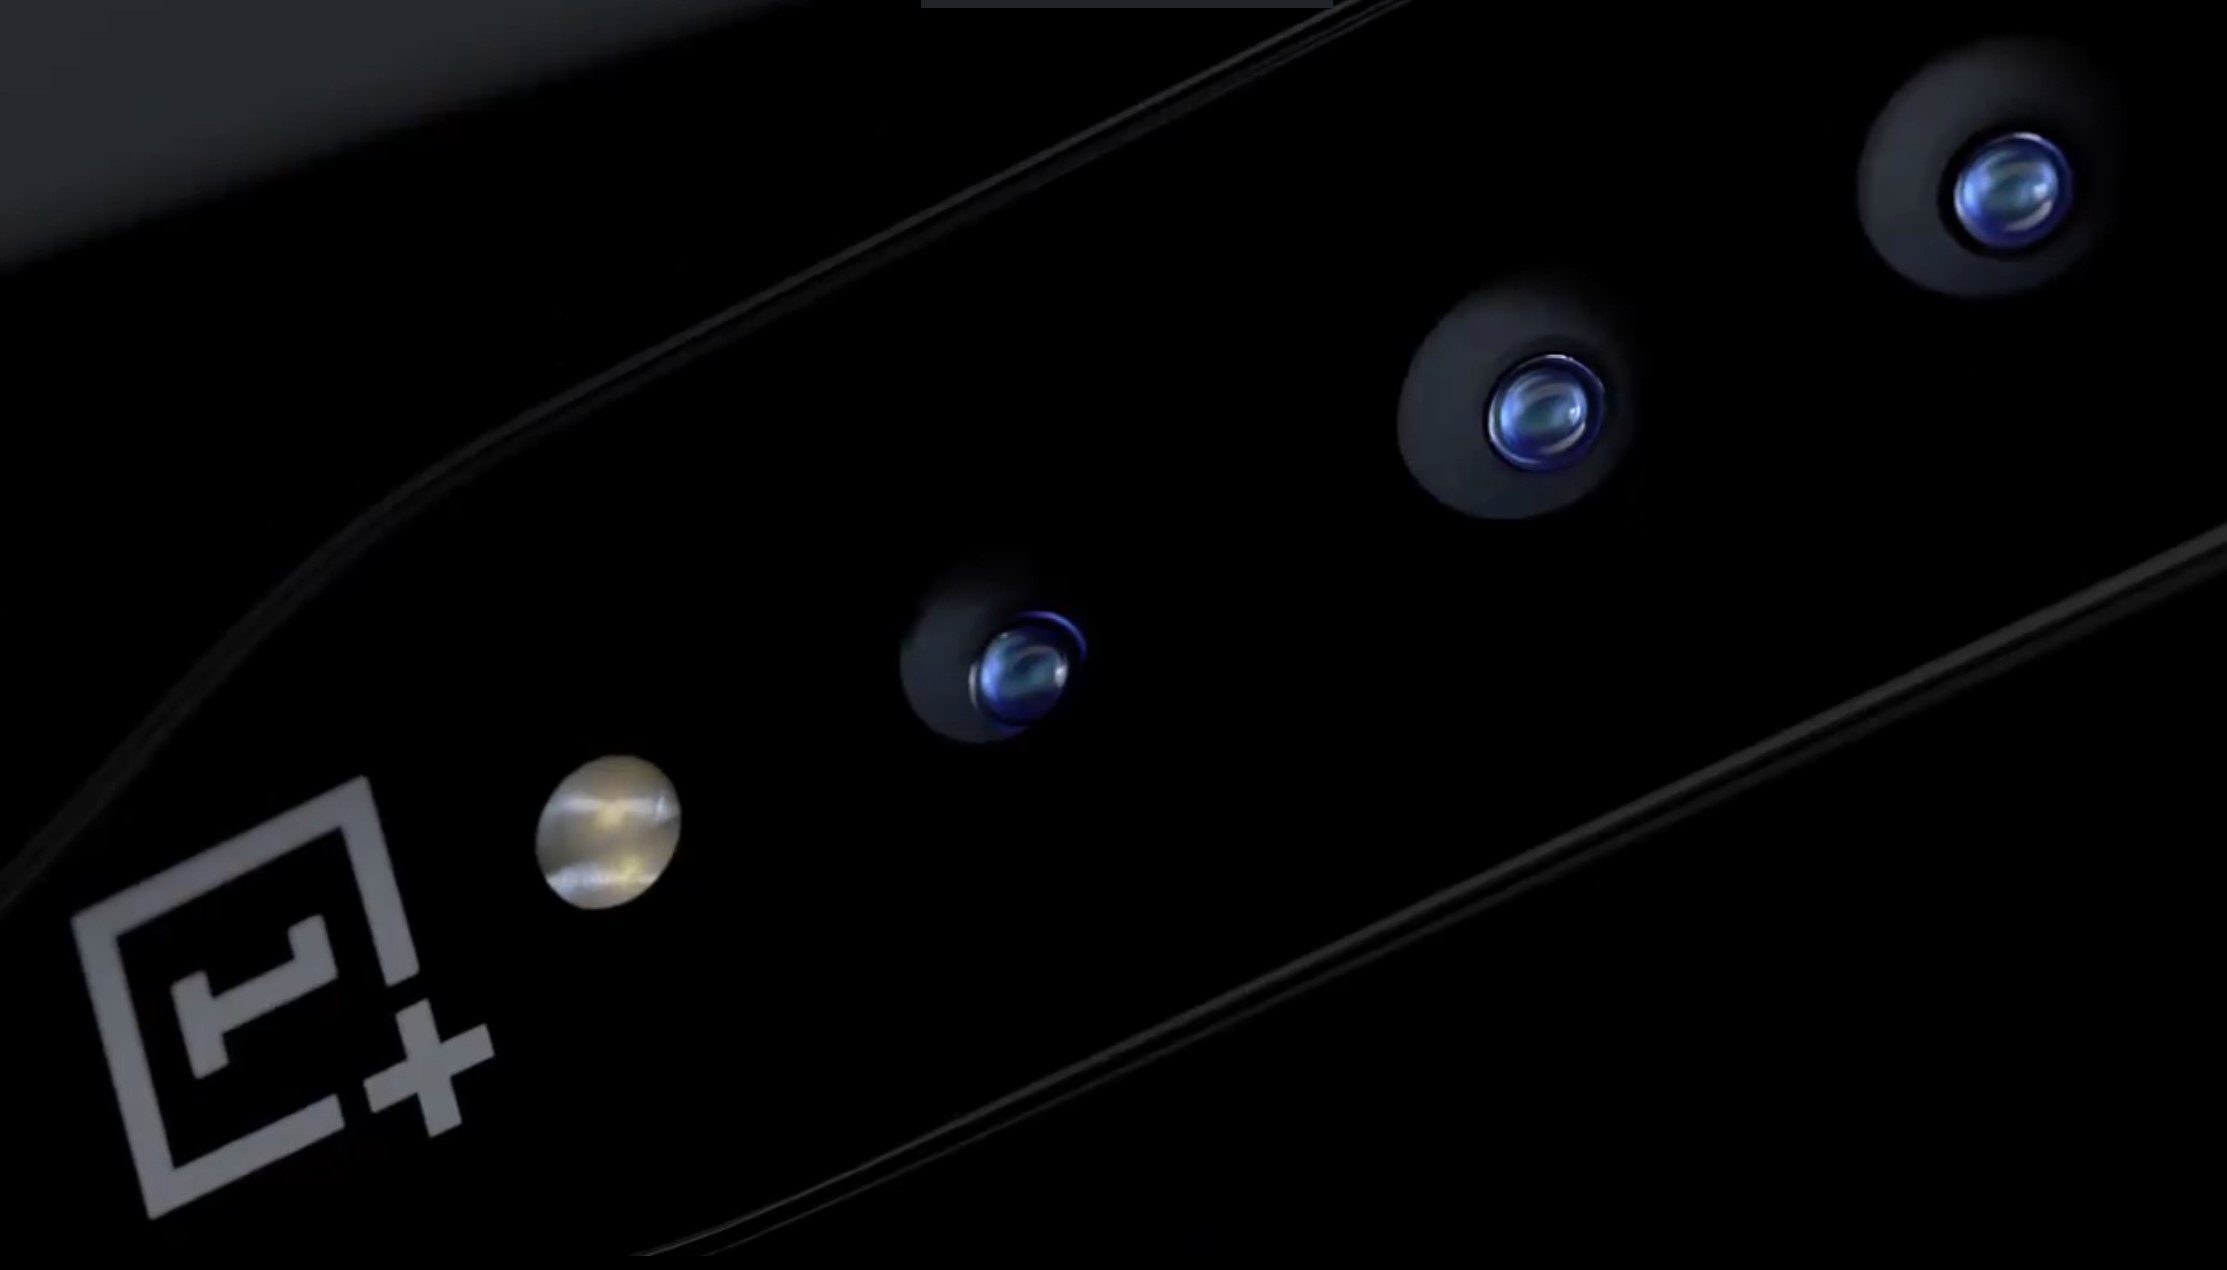 ทีเซอร์สมาร์ทโฟน OnePlus 'ConceptOne นำเสนอ "กล้องที่มองไม่เห็น" ที่ก้าวล้ำและเทคโนโลยีกระจกเปลี่ยนสี